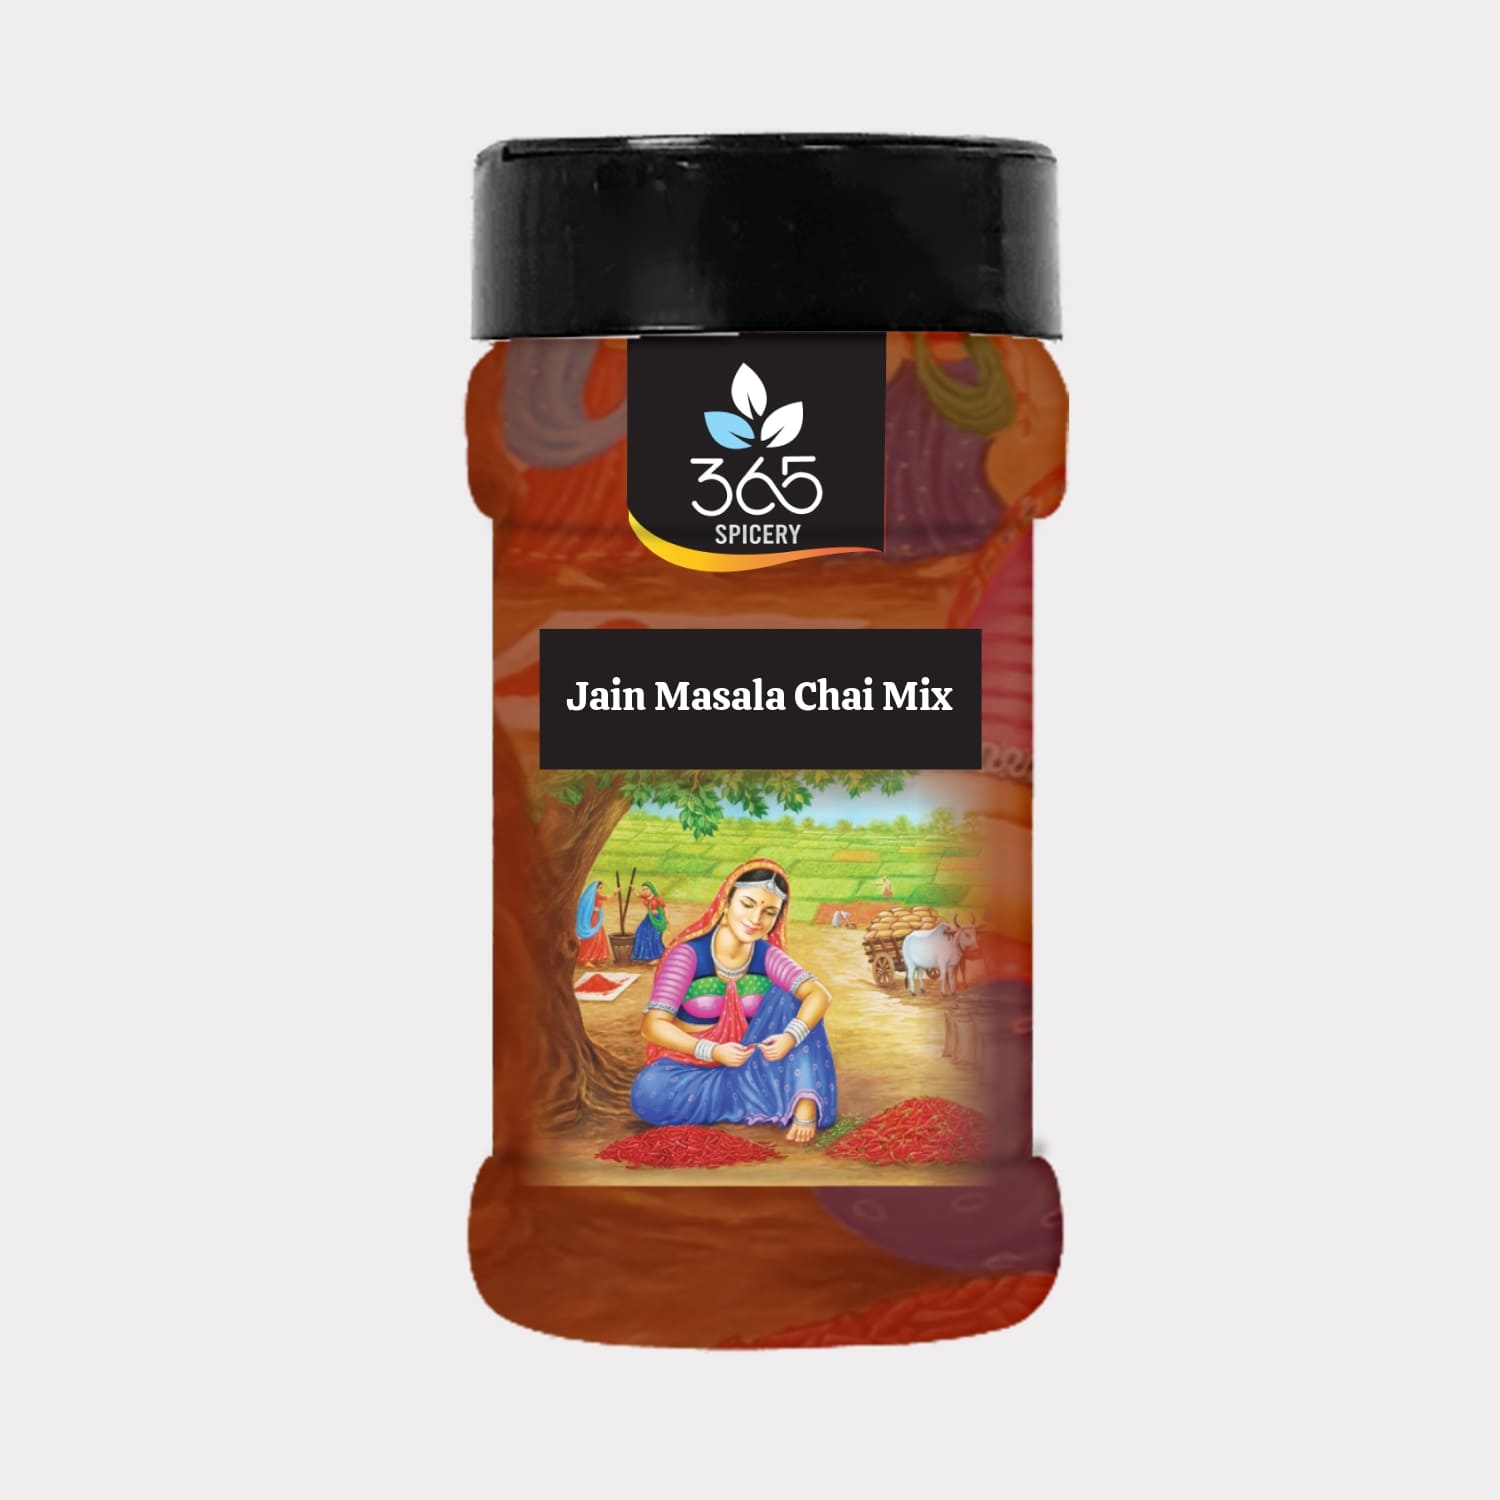 Jain Masala Chai Mix